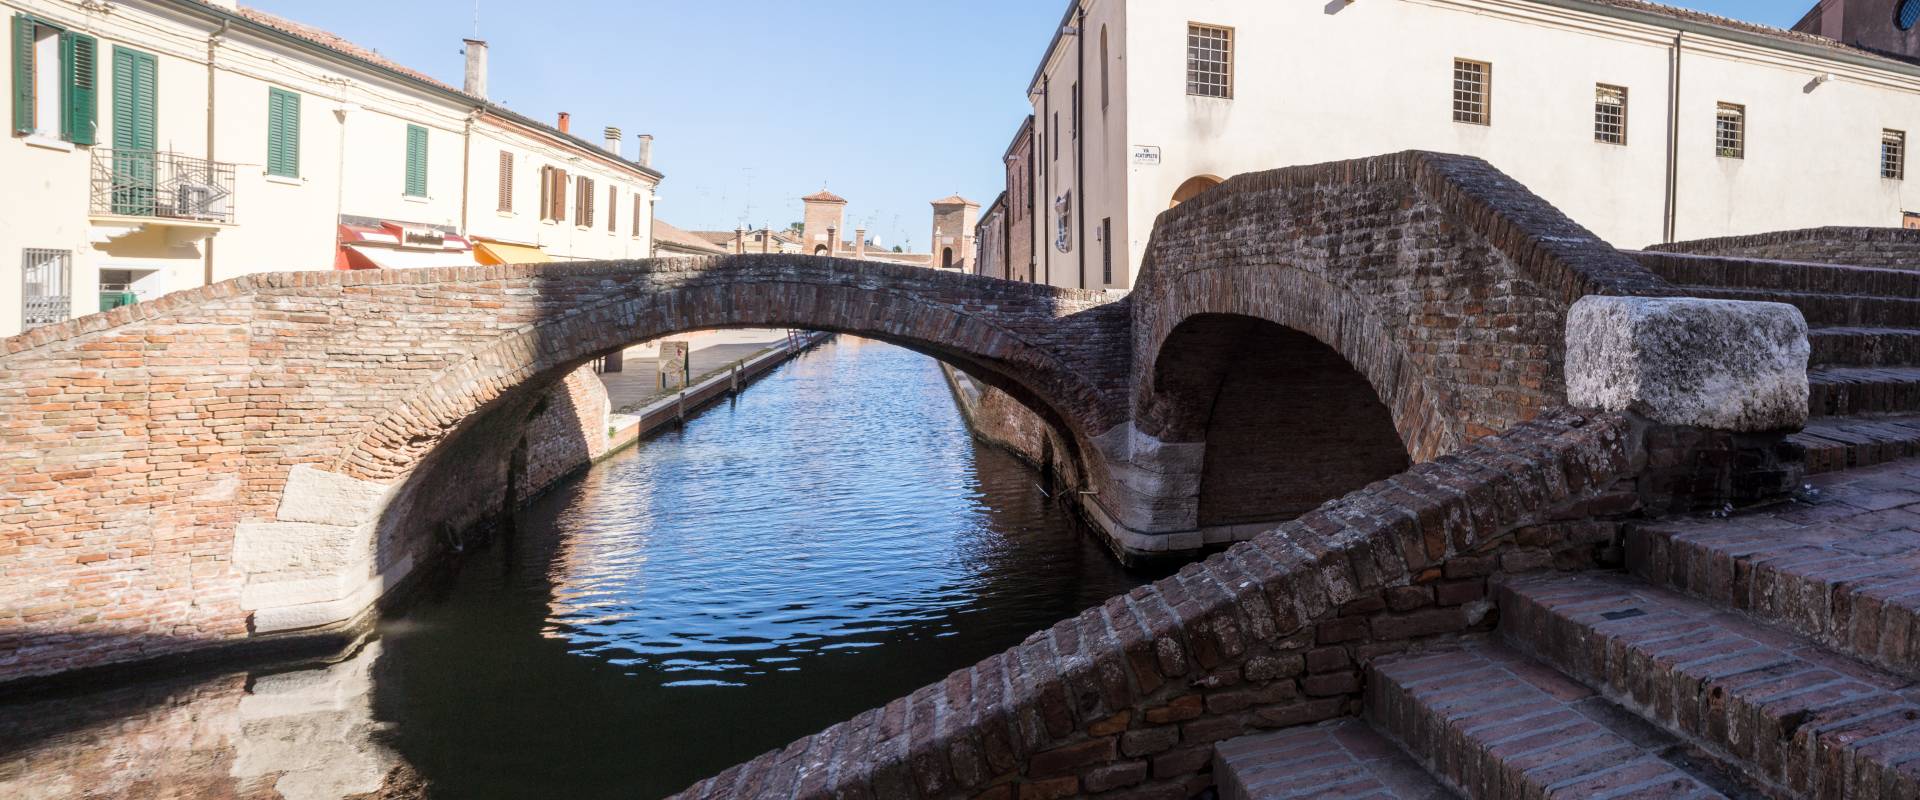 Centro storico - Comacchio foto di Vanni Lazzari